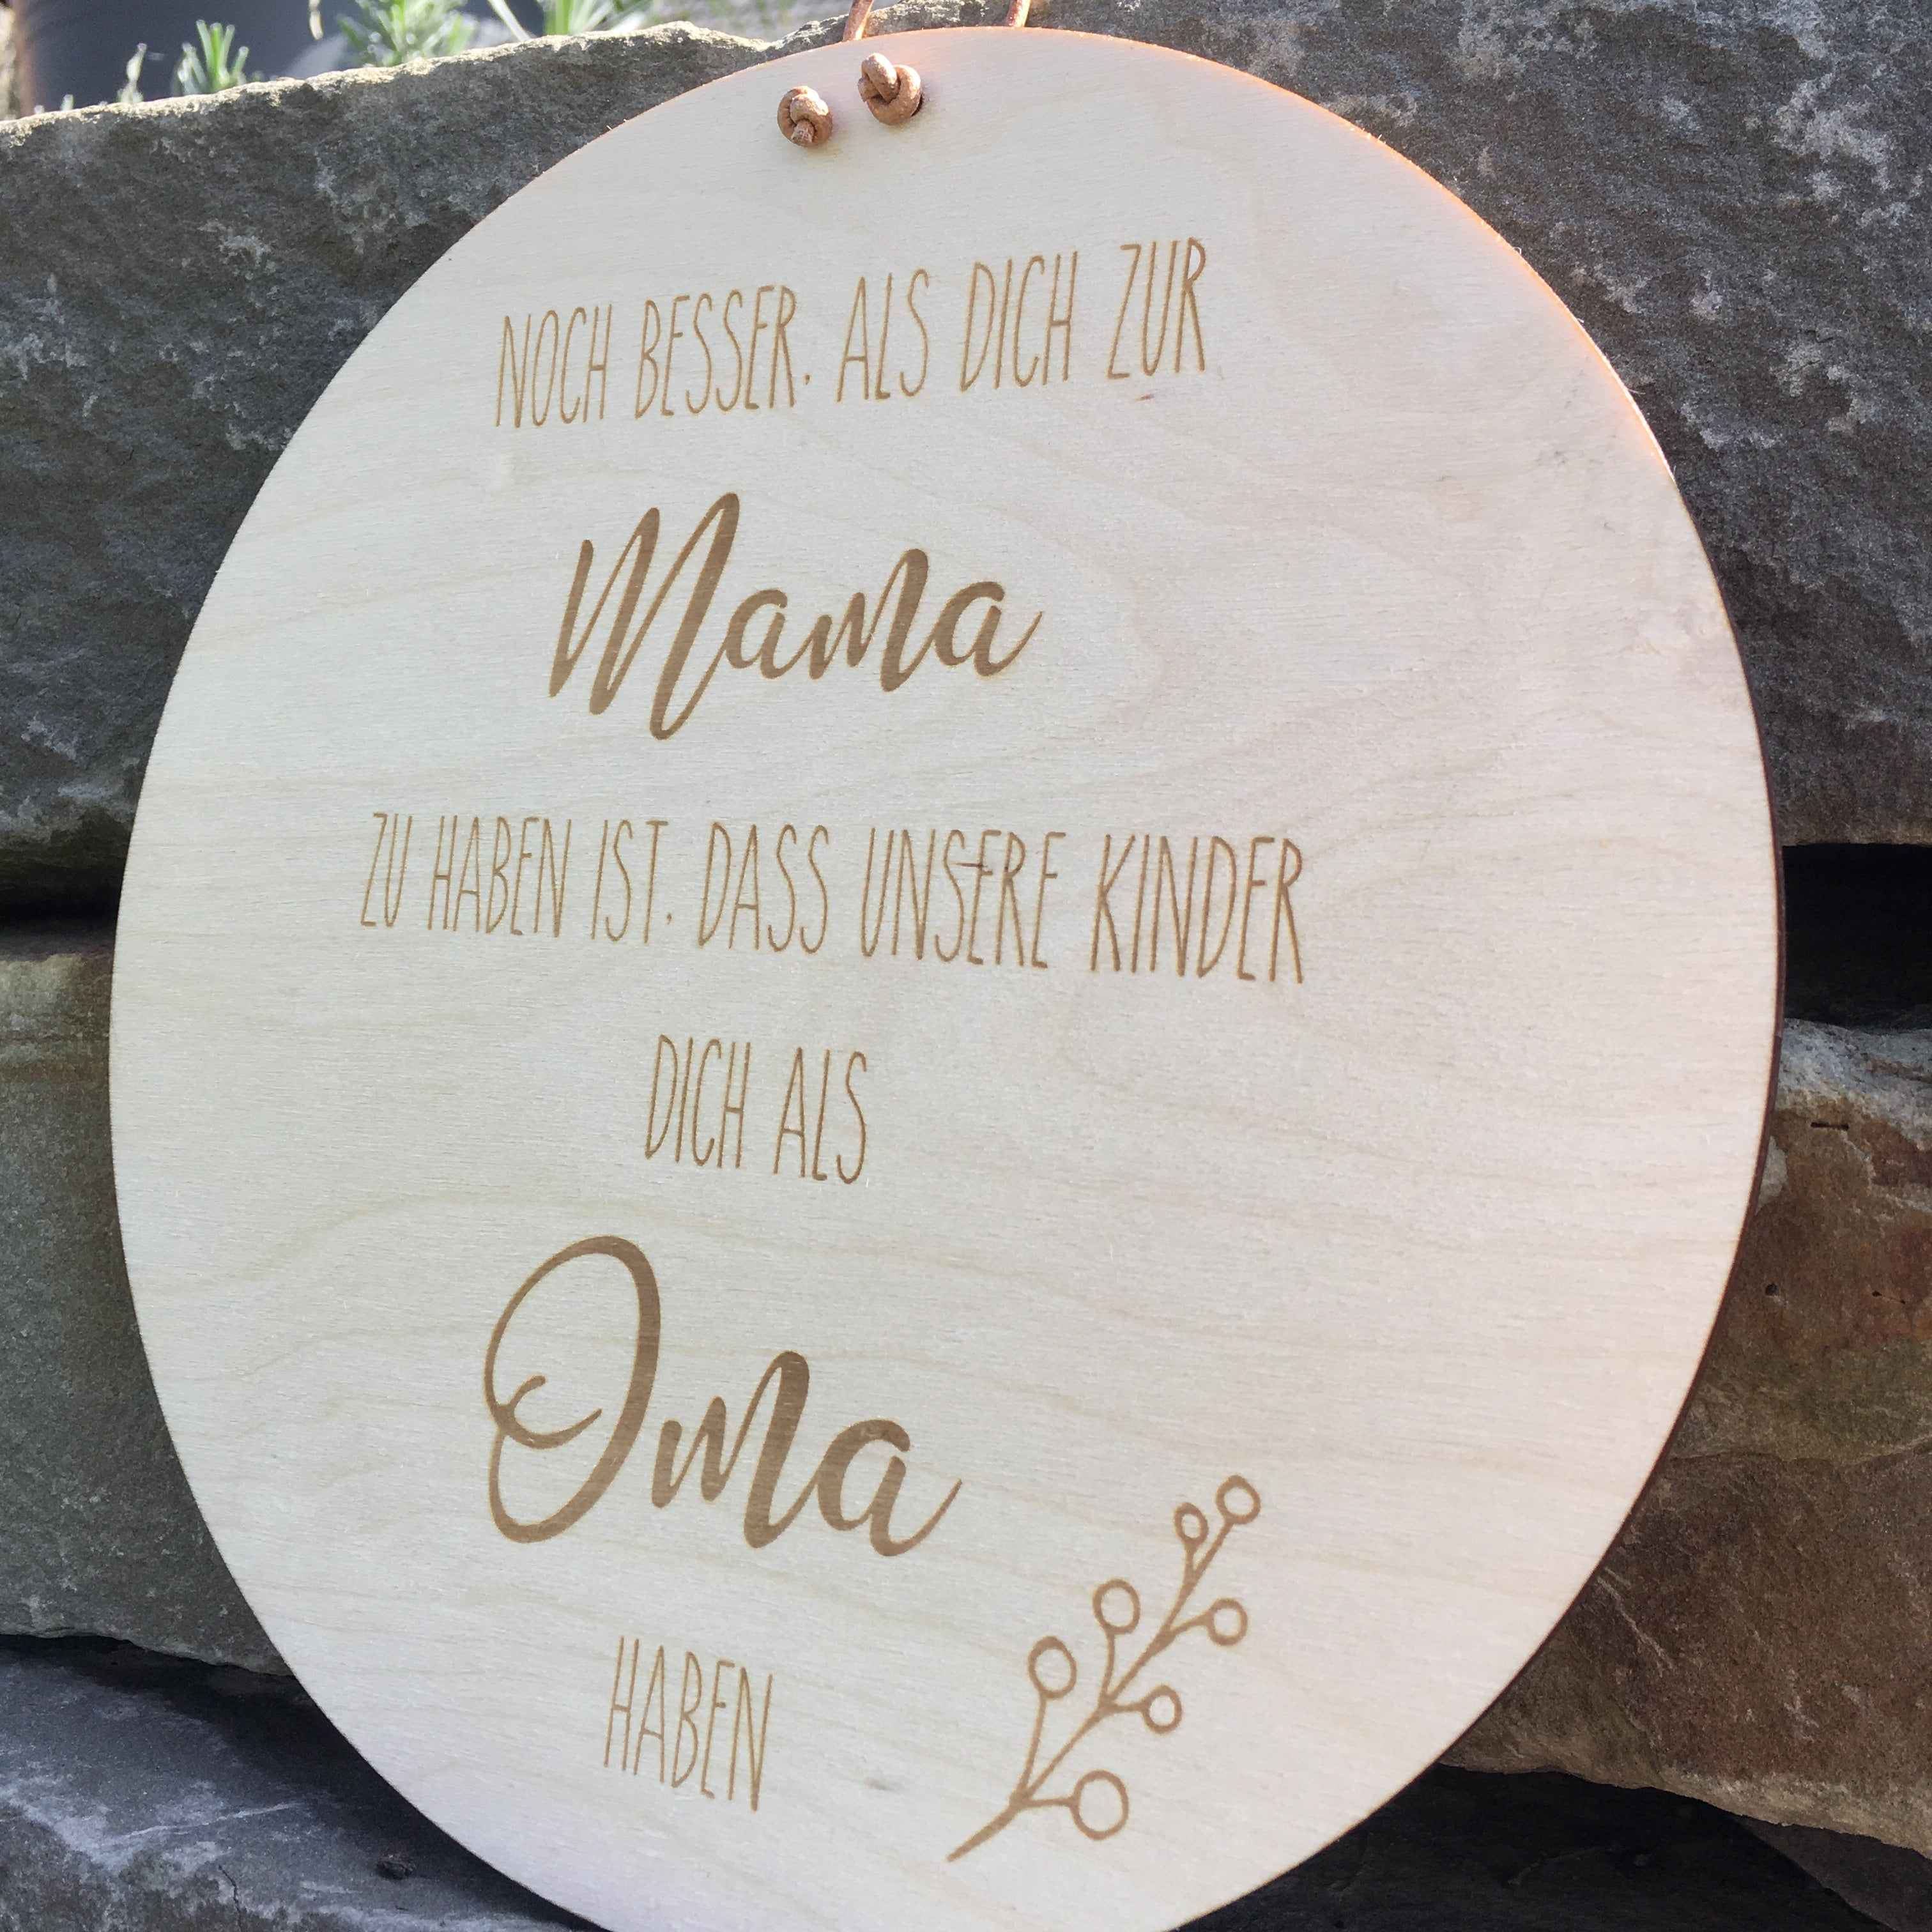 Holzschild "Noch besser, als dich zur Mama zu haben ist, dass unsere Kinder dich als Oma haben"